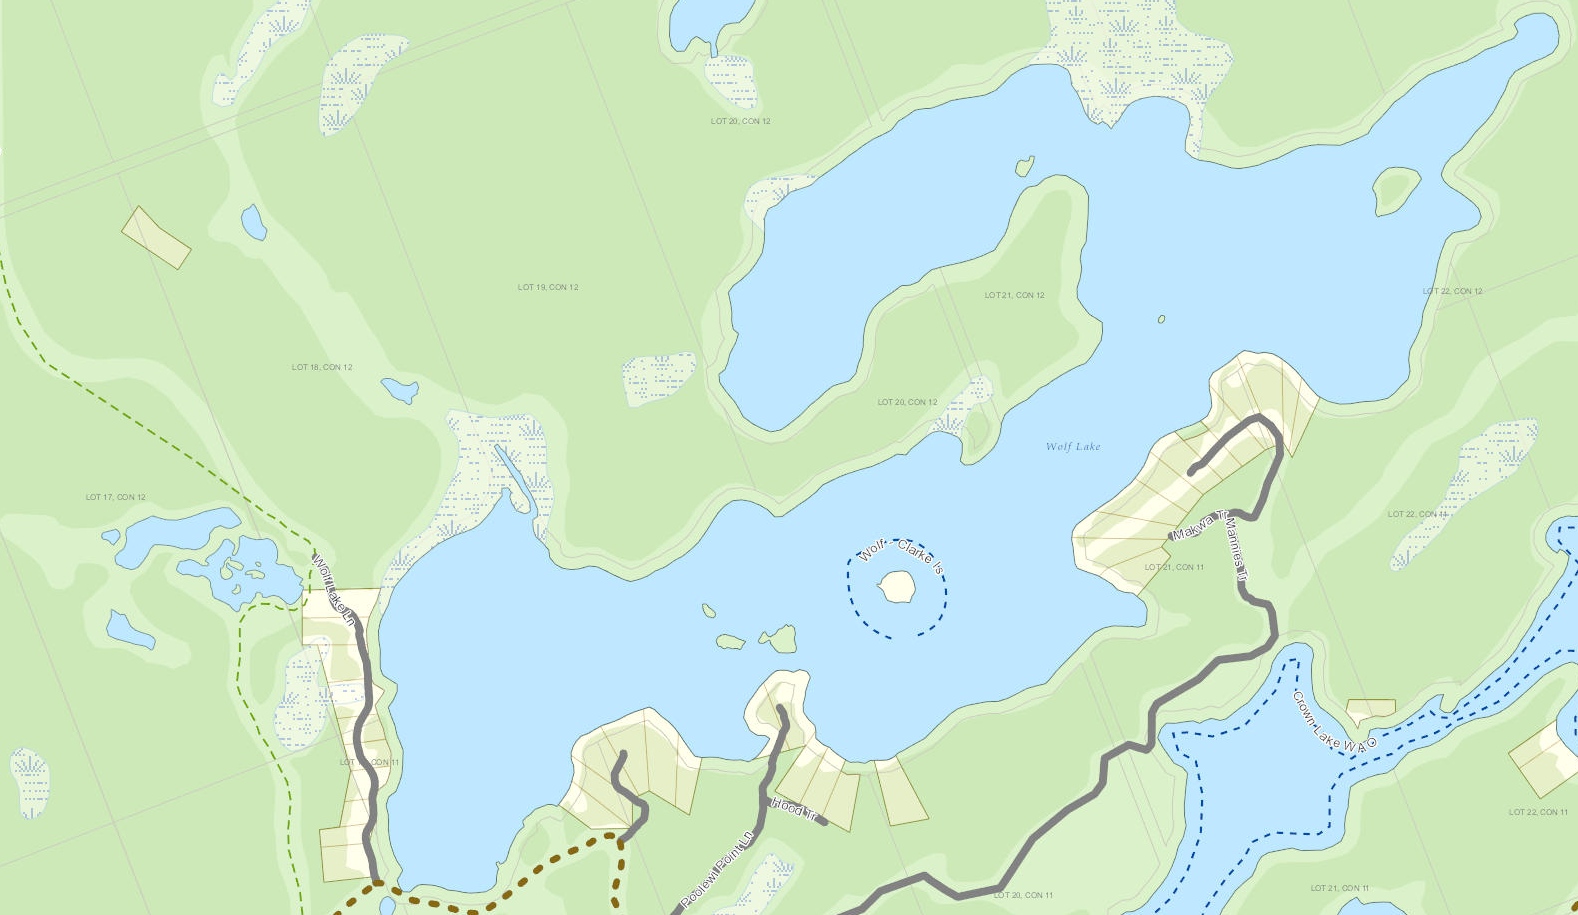 Bloody Lake Cadastral Map - Bloody Lake - Muskoka